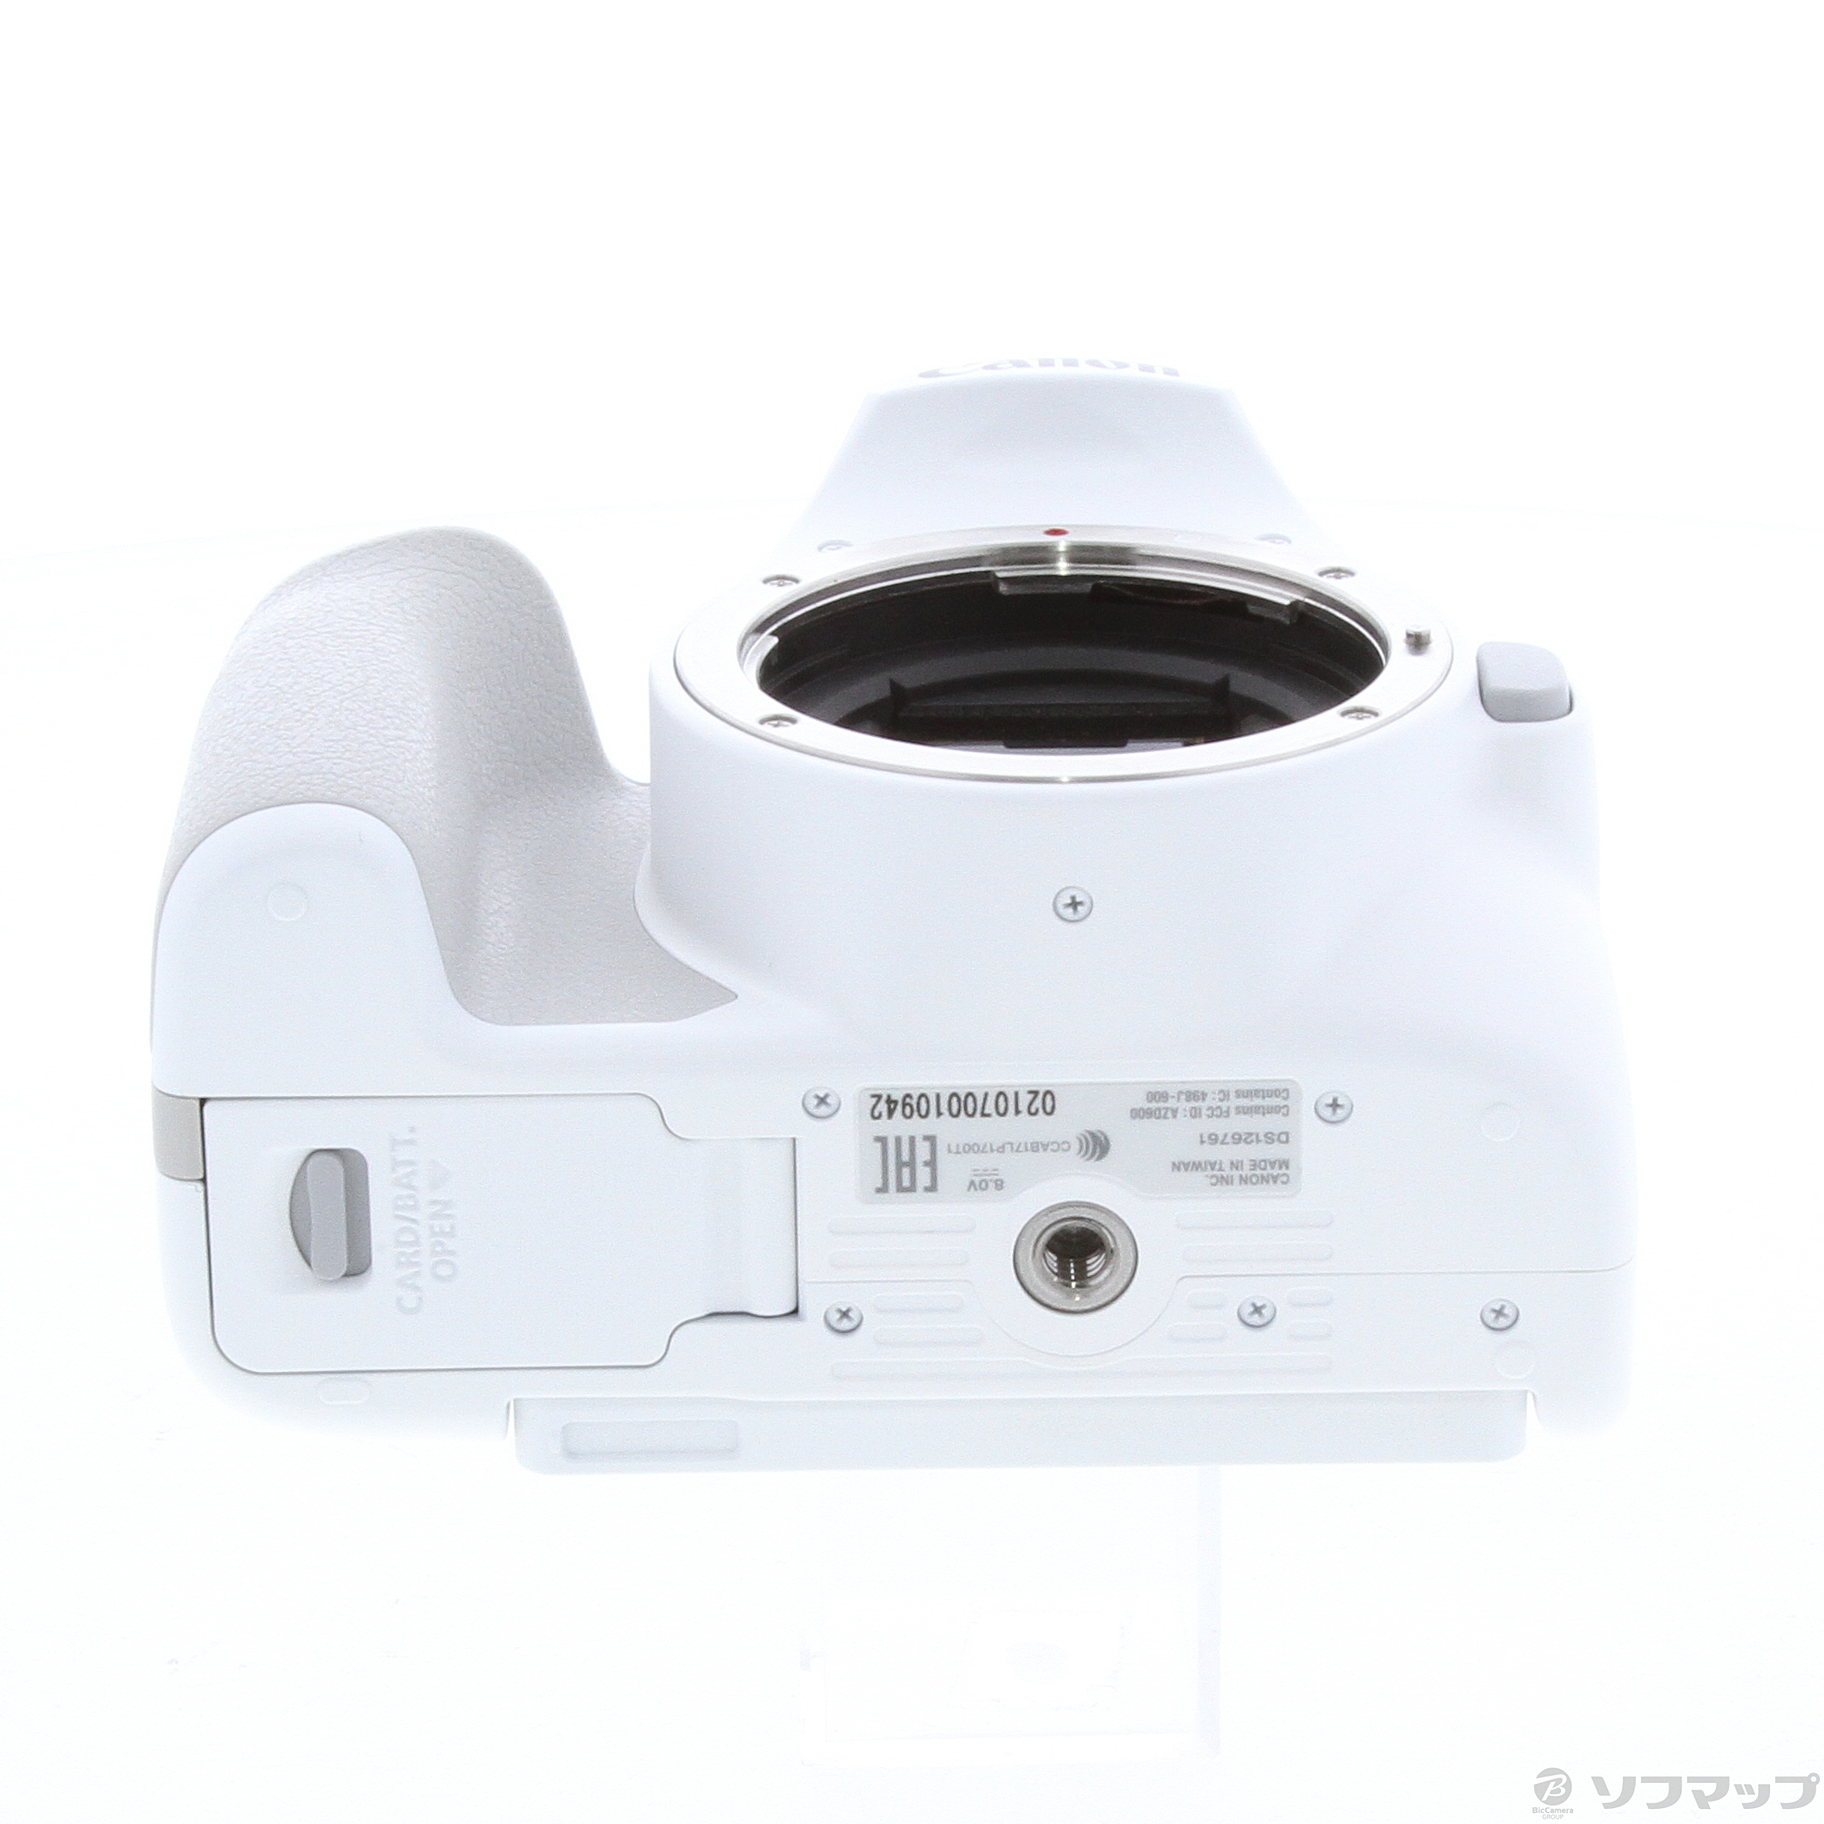 中古】〔展示品〕 EOS Kiss X10 (ホワイト) EF-S18-55 IS STM レンズ 